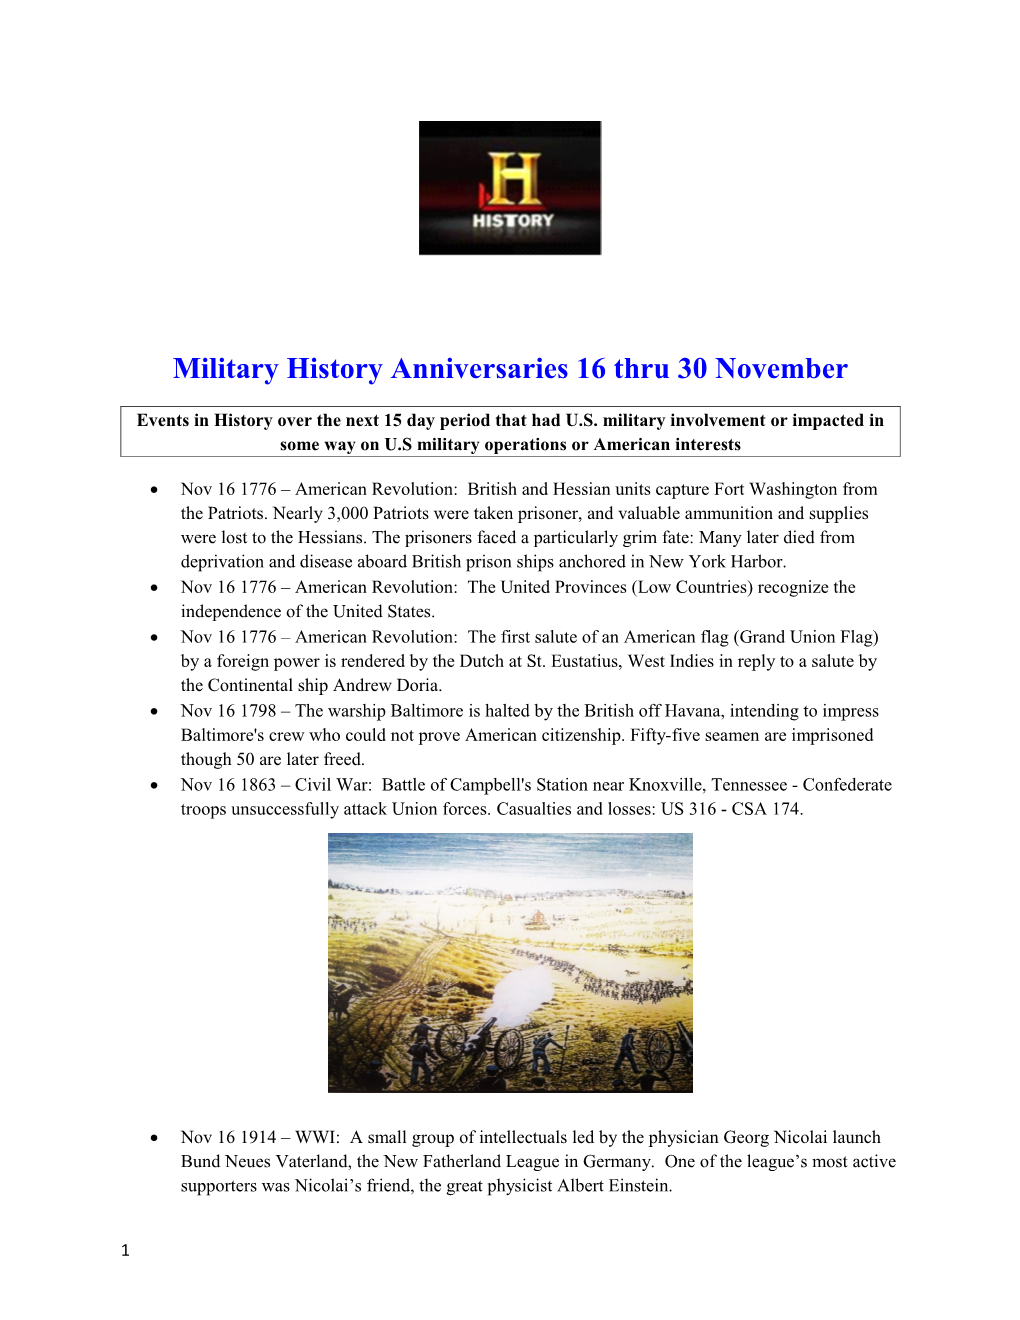 Military History Anniversaries 16 Thru 30 November